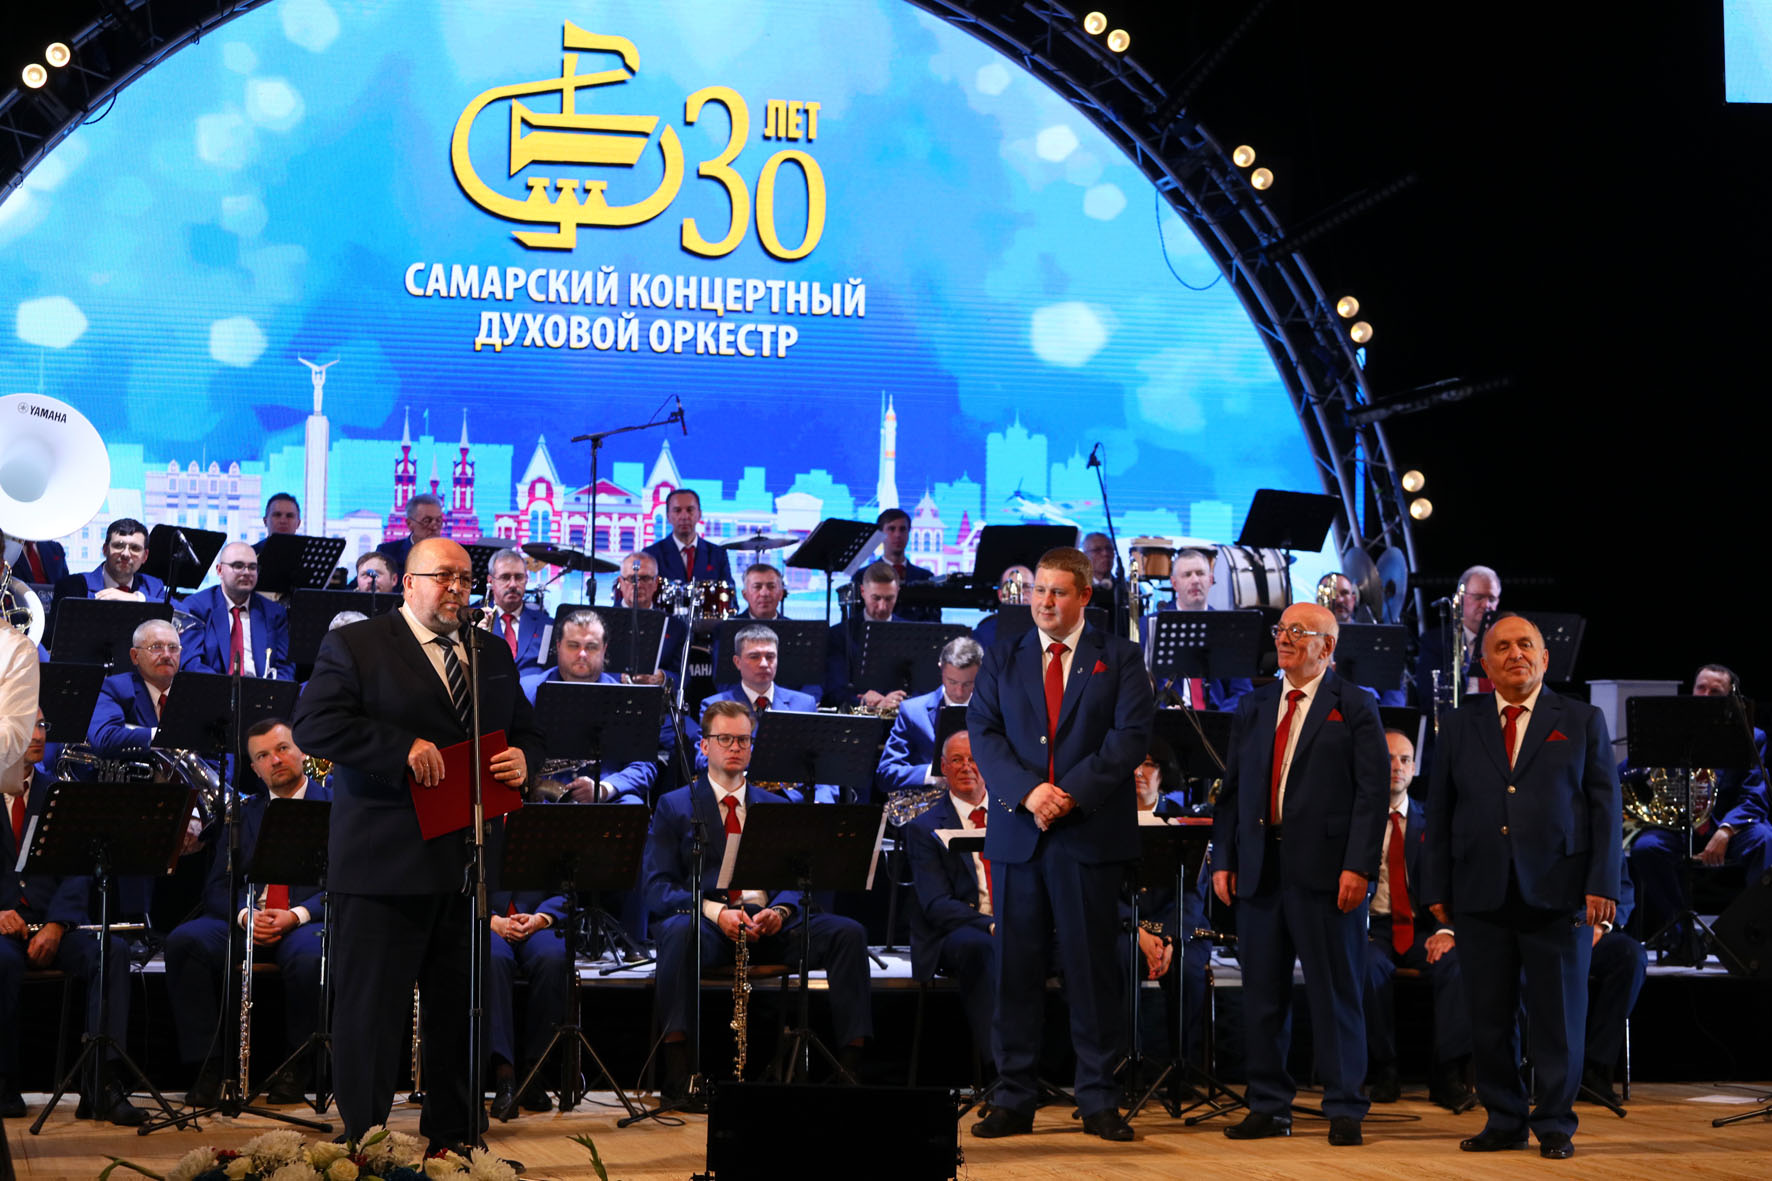 Самарский концертный духовой оркестр отметил свое 30-летие